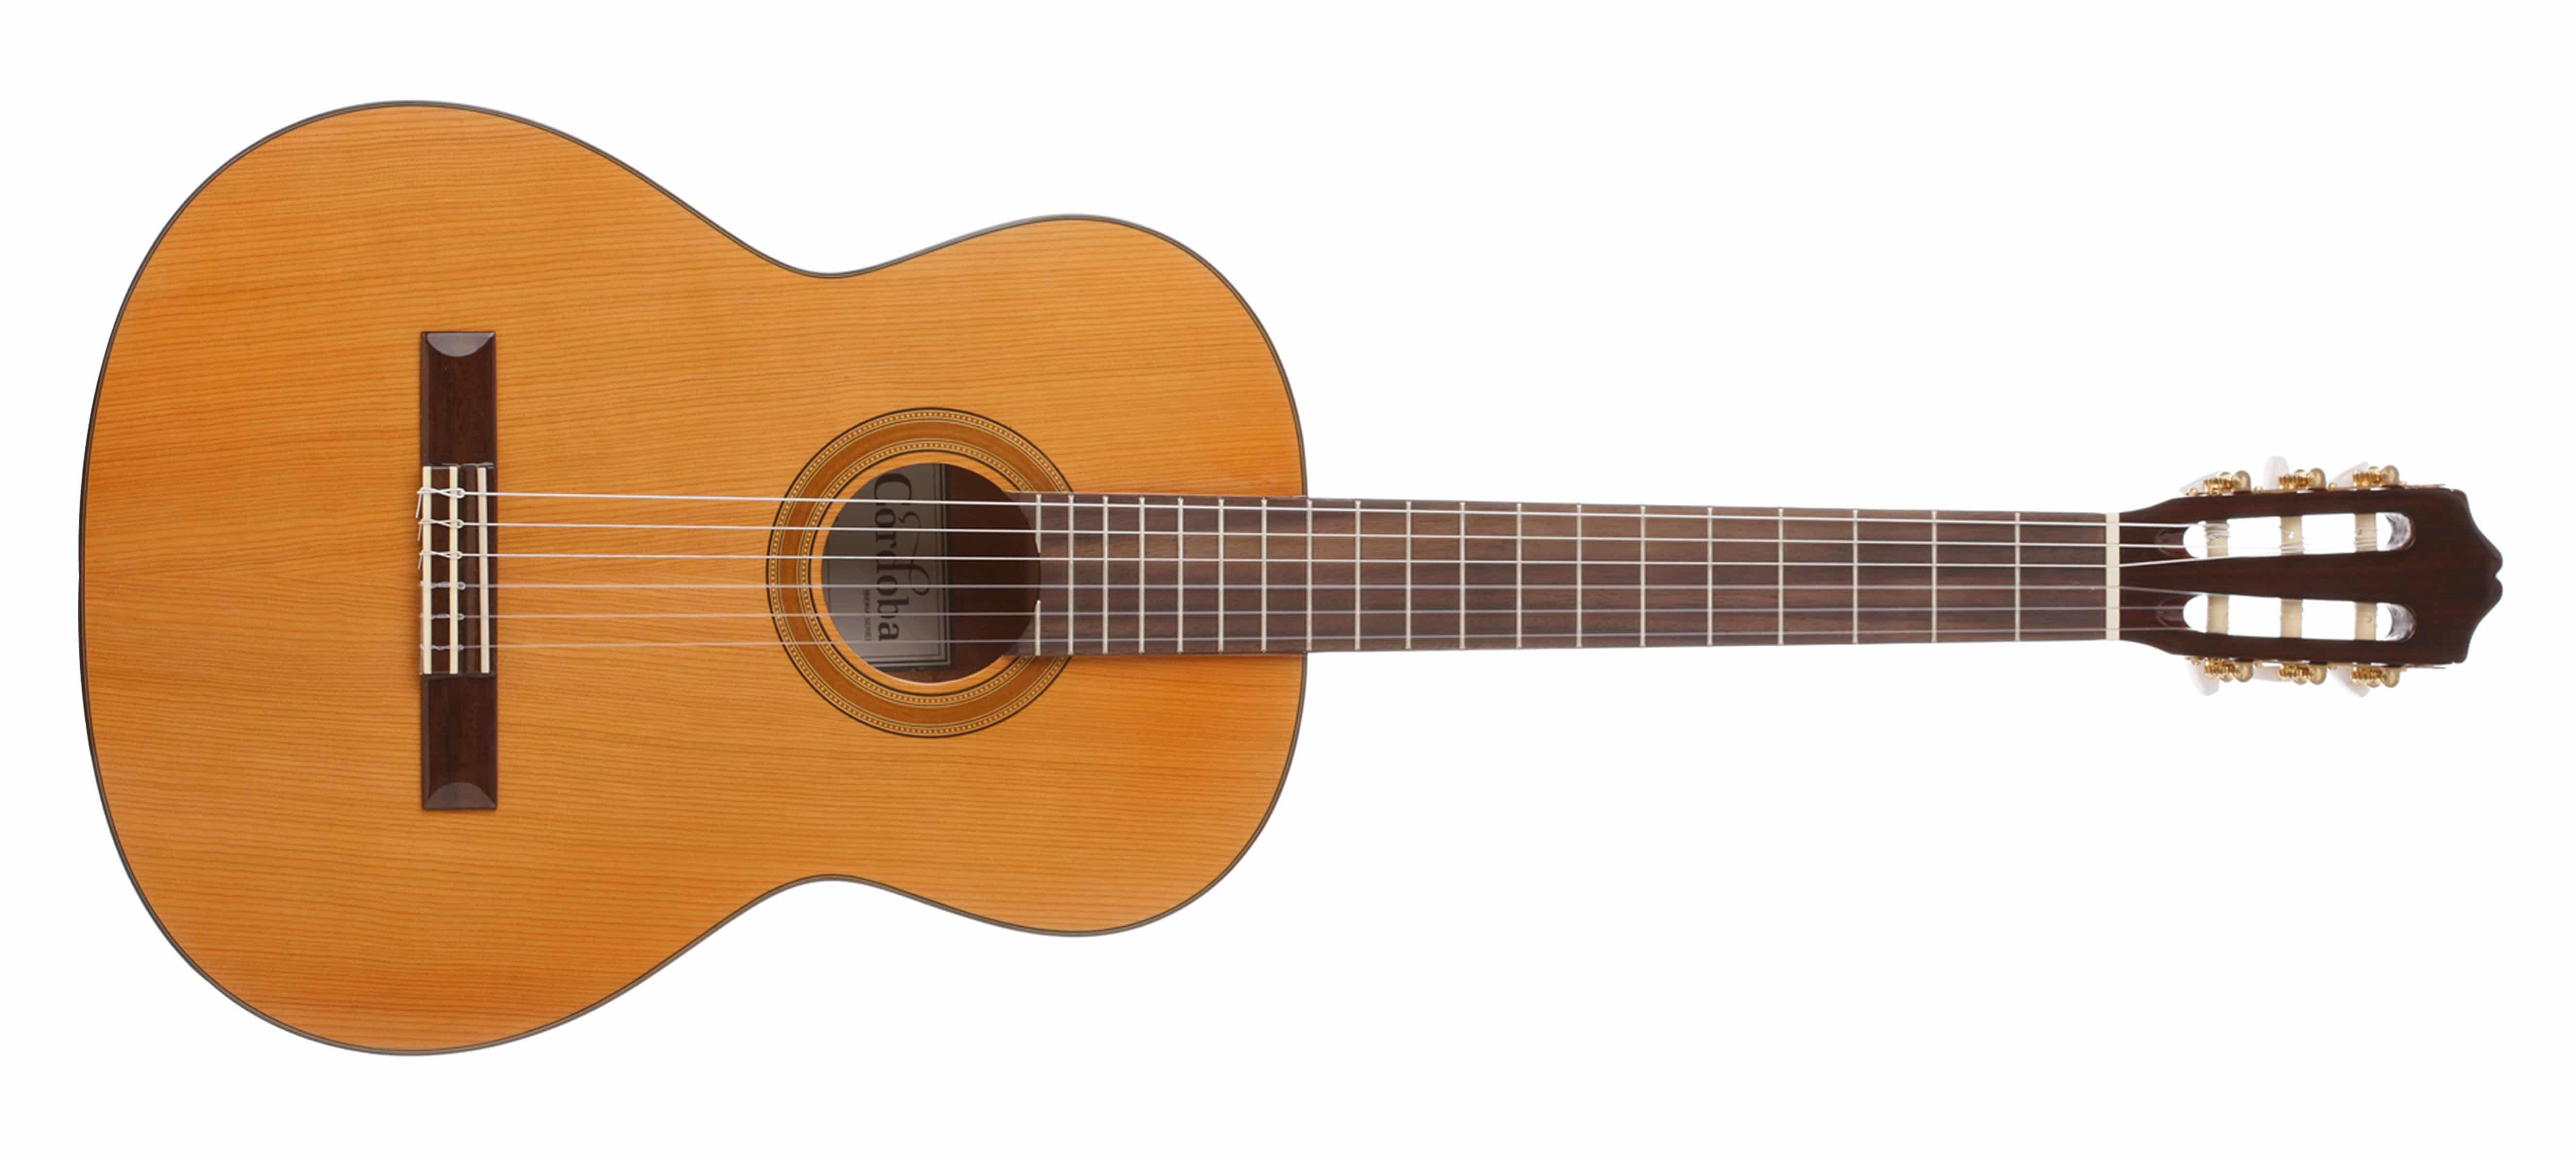 7 guitarras acústicas por menos de 200 US ideales para aprender a tocar